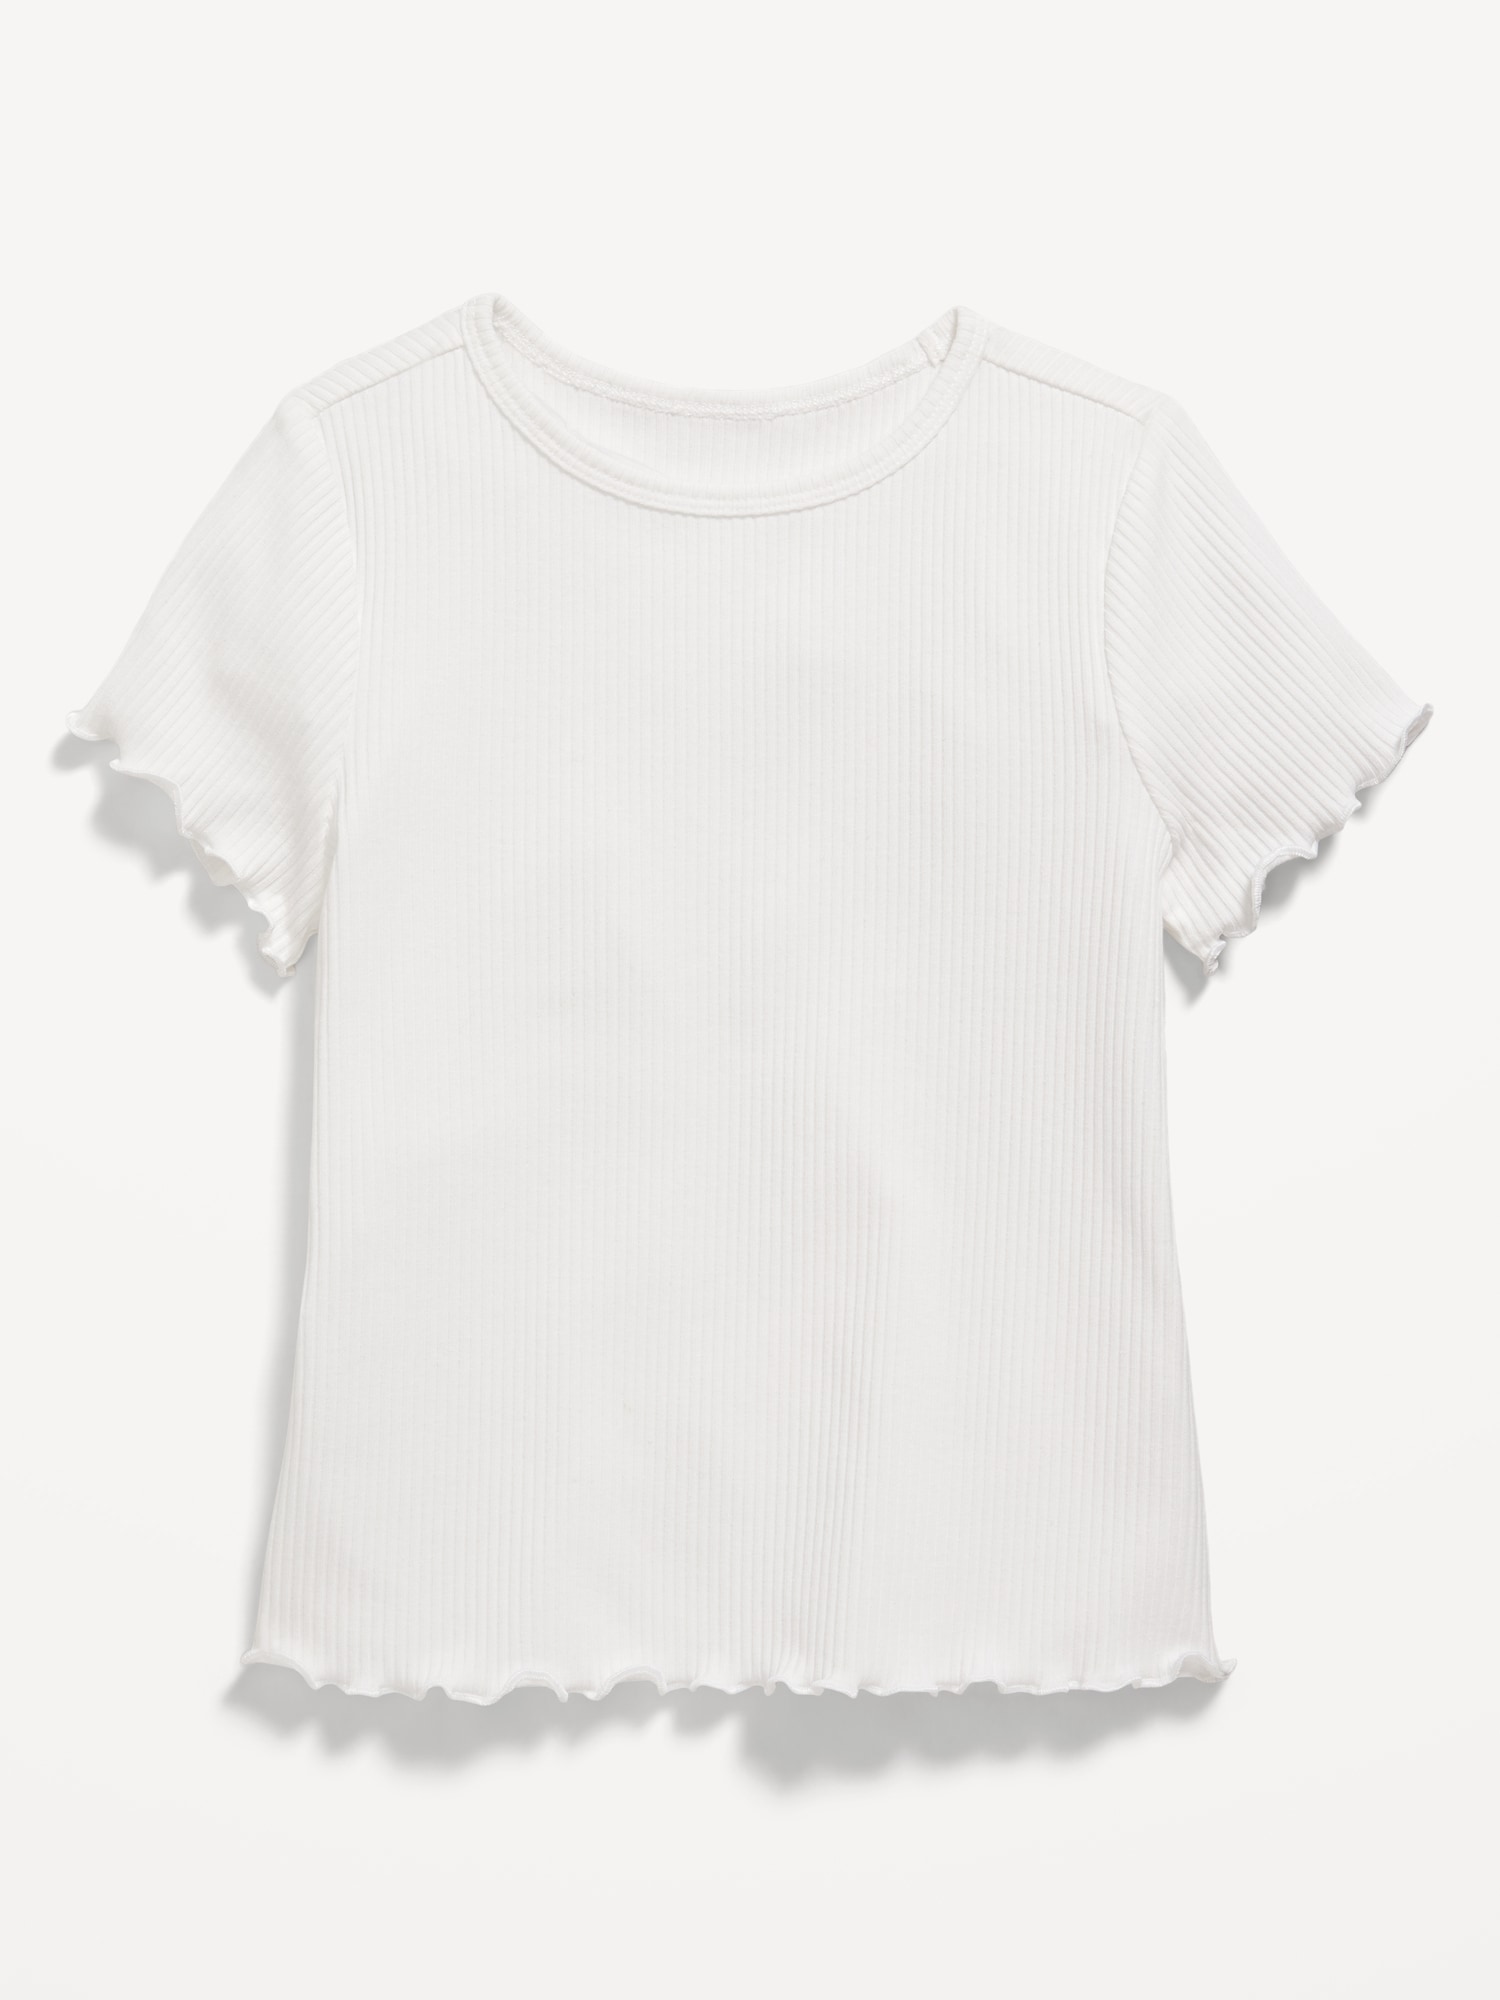 Short-Sleeve Lettuce-Edge T-Shirt for Toddler Girls Hot Deal